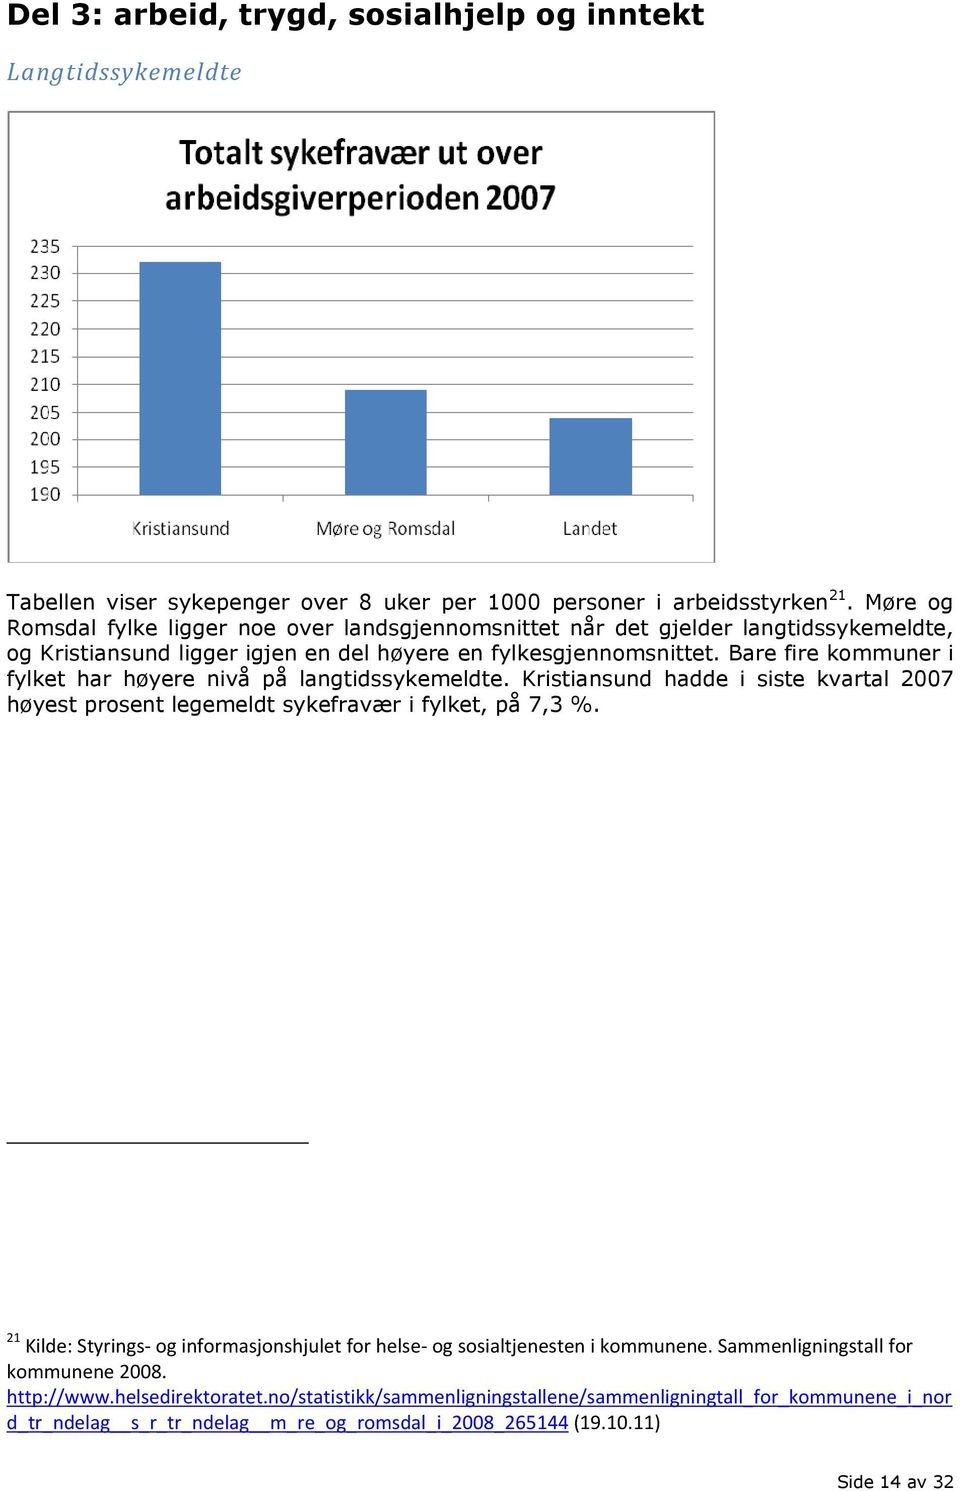 Bare fire kommuner i fylket har høyere nivå på langtidssykemeldte. Kristiansund hadde i siste kvartal 2007 høyest prosent legemeldt sykefravær i fylket, på 7,3 %.